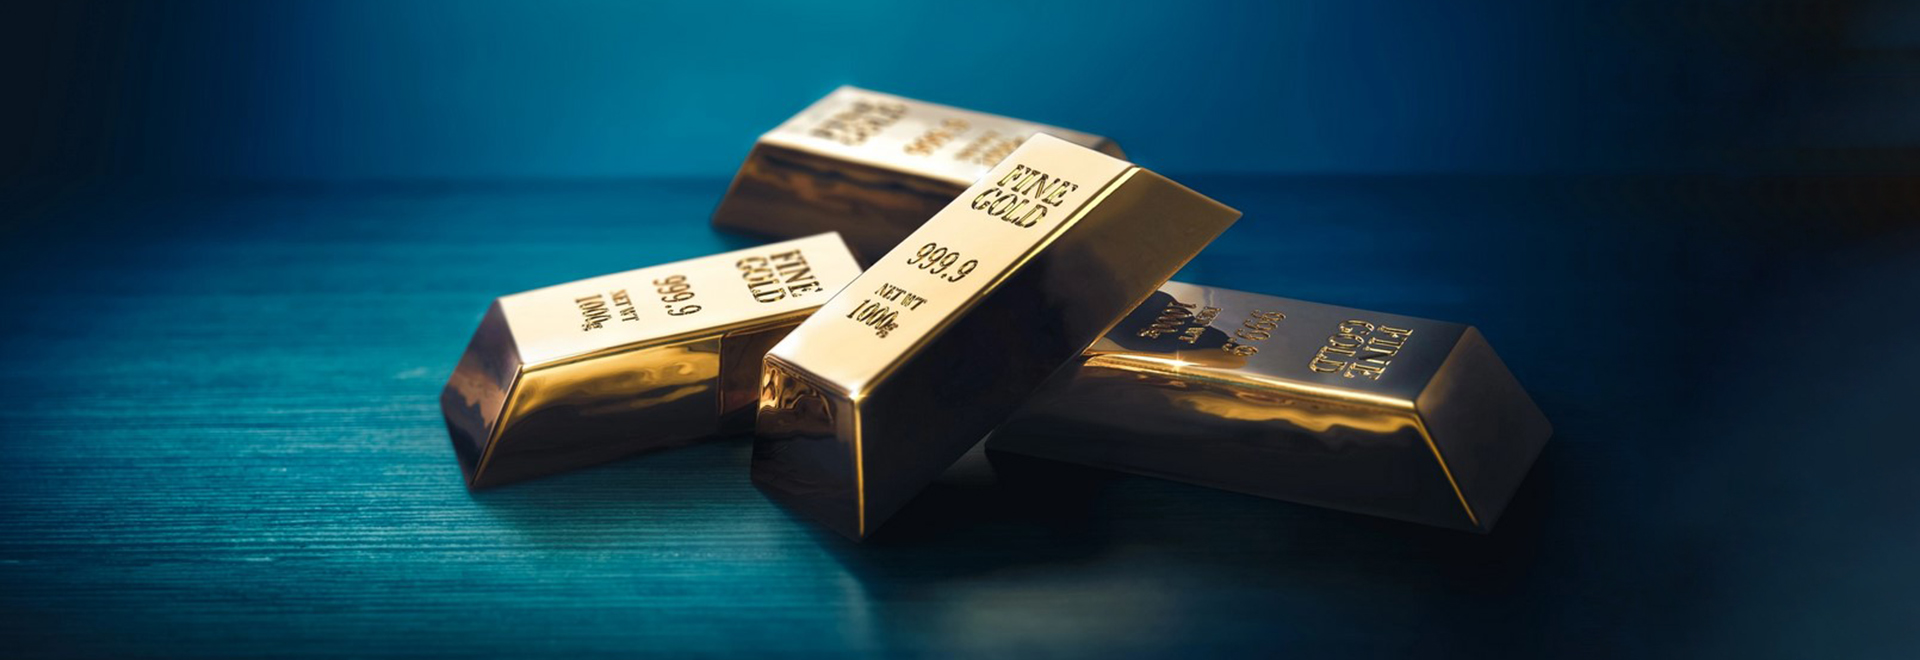 قیمت طلا به زیر 1960 دلار کاهش یافته است		